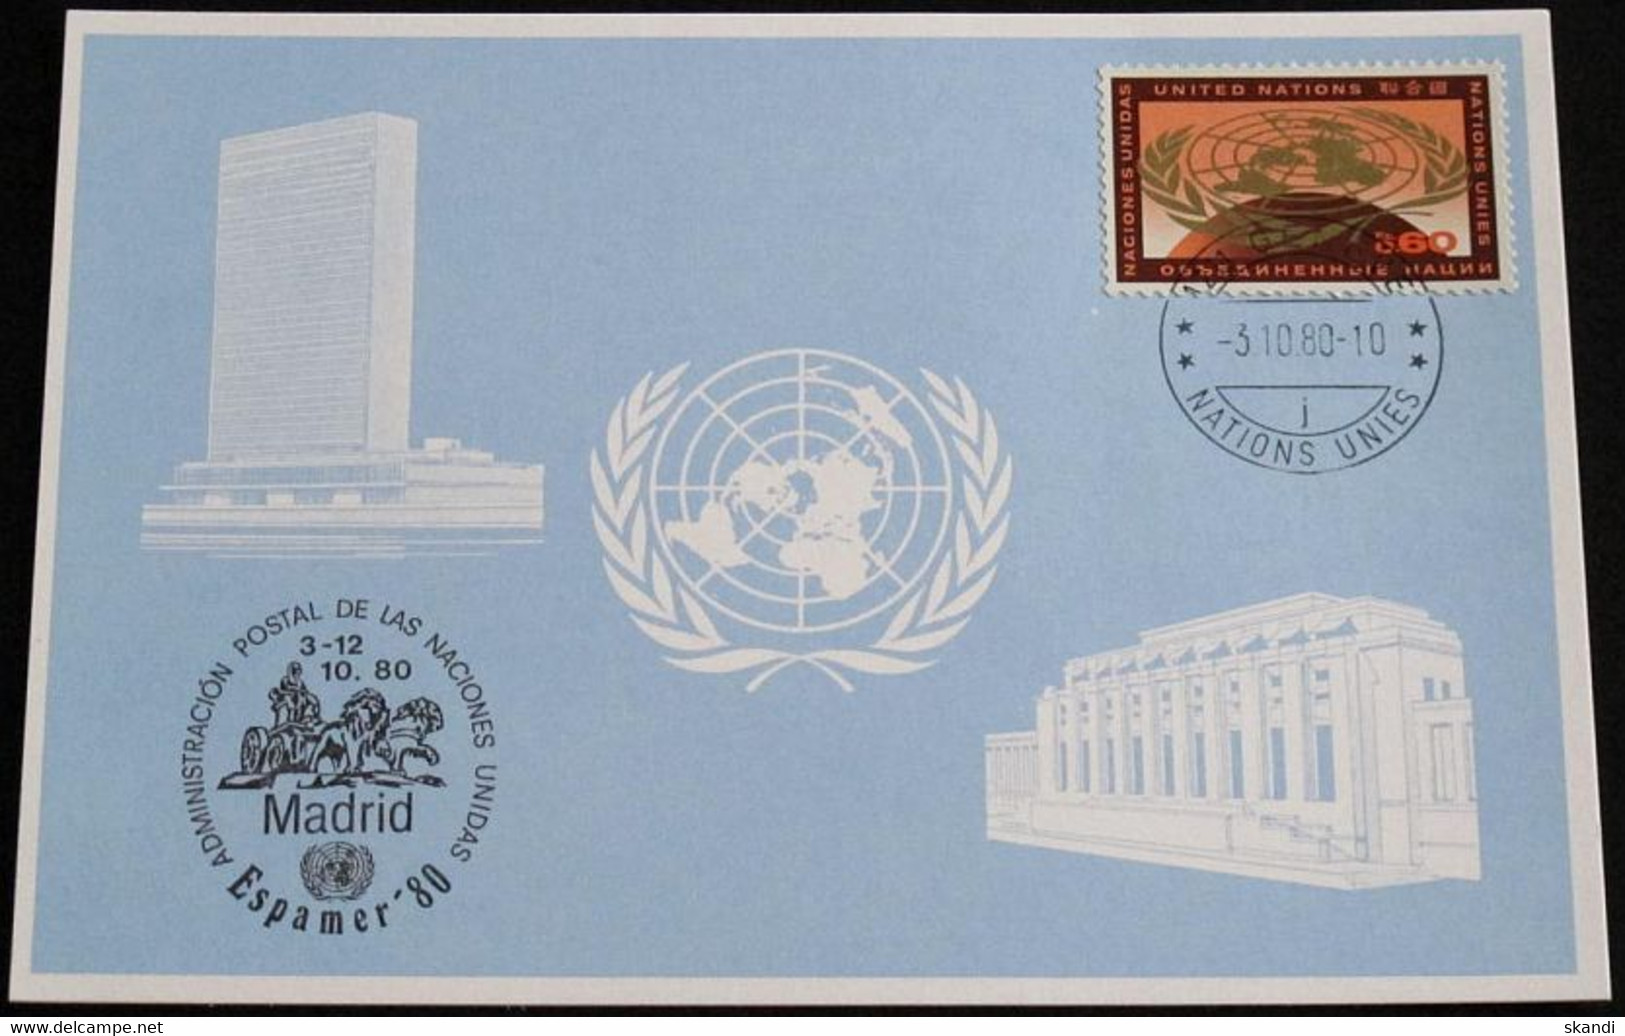 UNO GENF 1980 Mi-Nr. 93 Blaue Karte - Blue Card Mit Erinnerungsstempel ESPAMER 80 MADRID - Briefe U. Dokumente